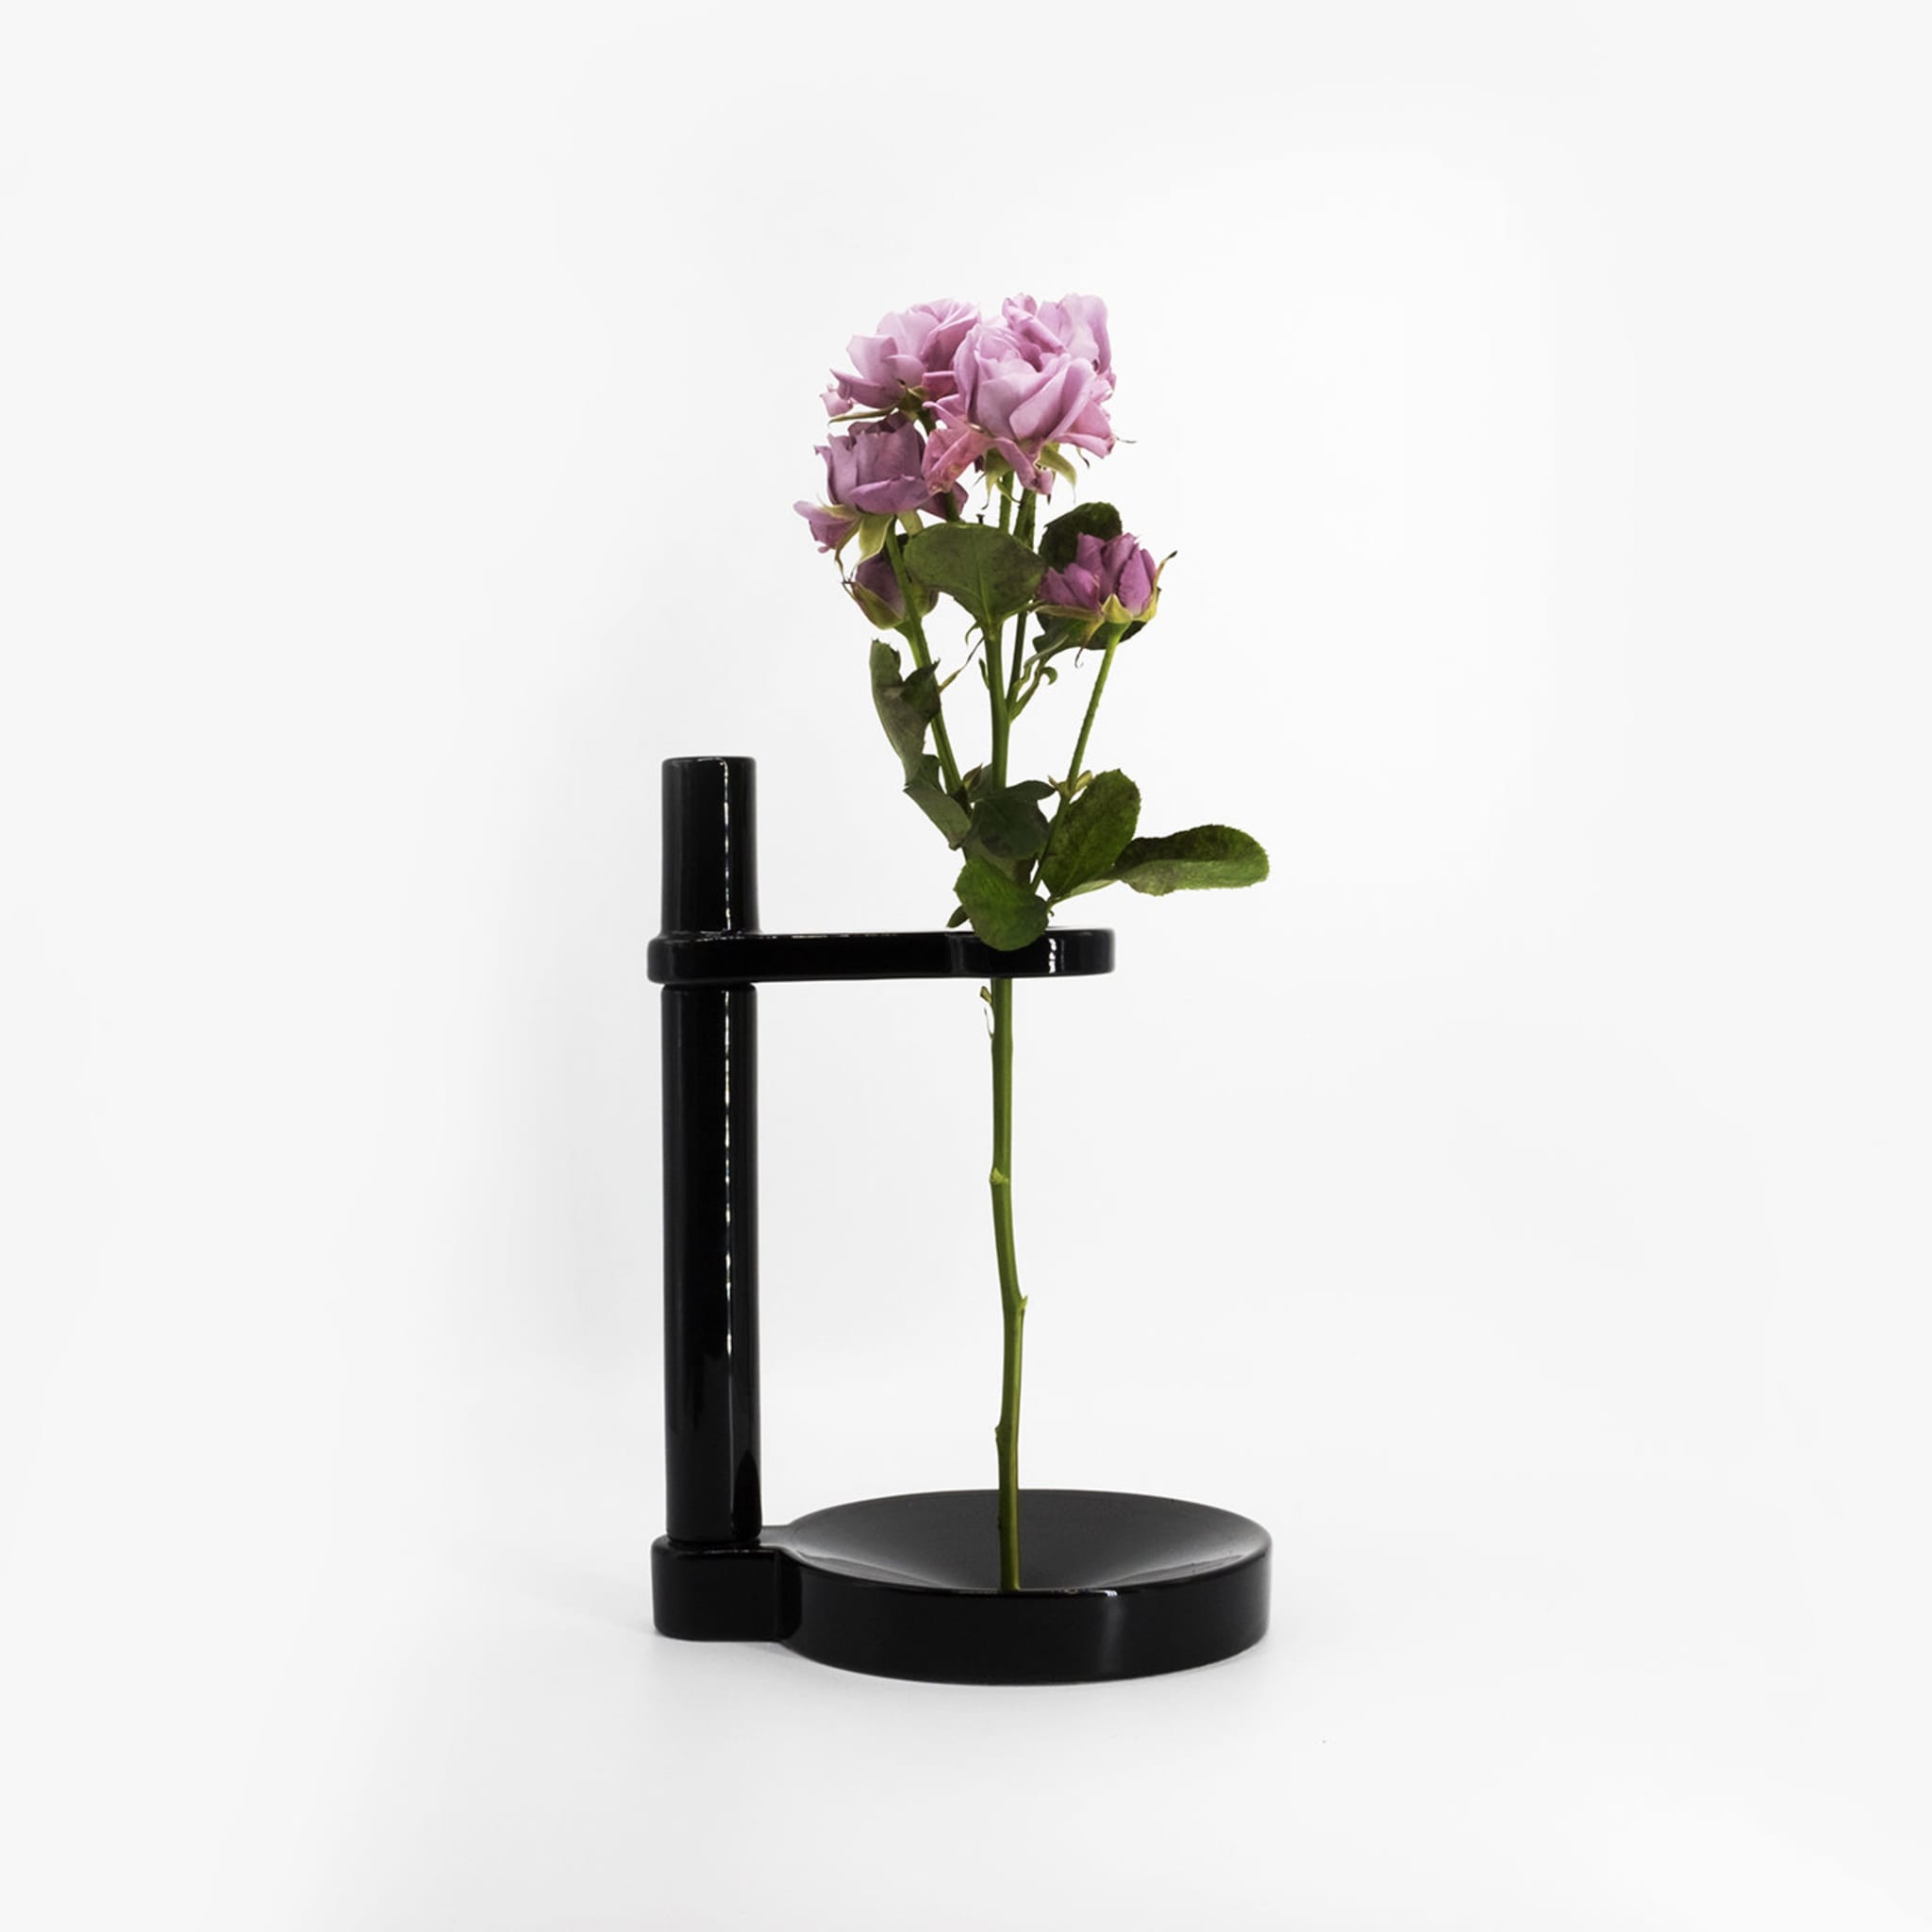 Minimo 1 Black Vase - Alternative view 4